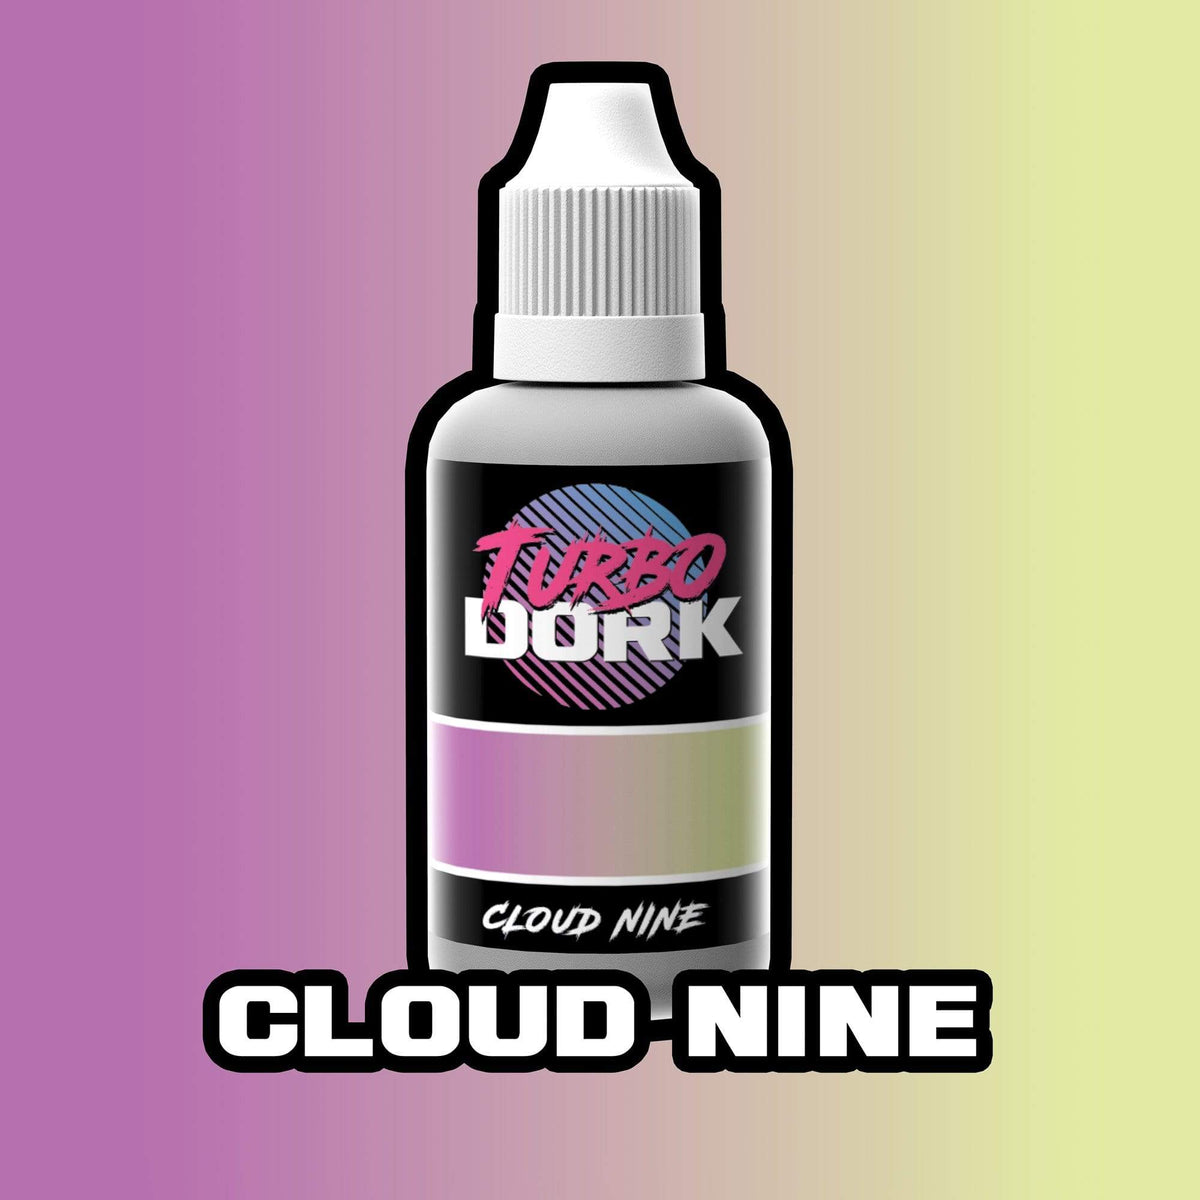 Cloud Nine Colorshift Acrylic Paint Turboshift Turbo Dork Exit 23 Games Cloud Nine Colorshift Acrylic Paint